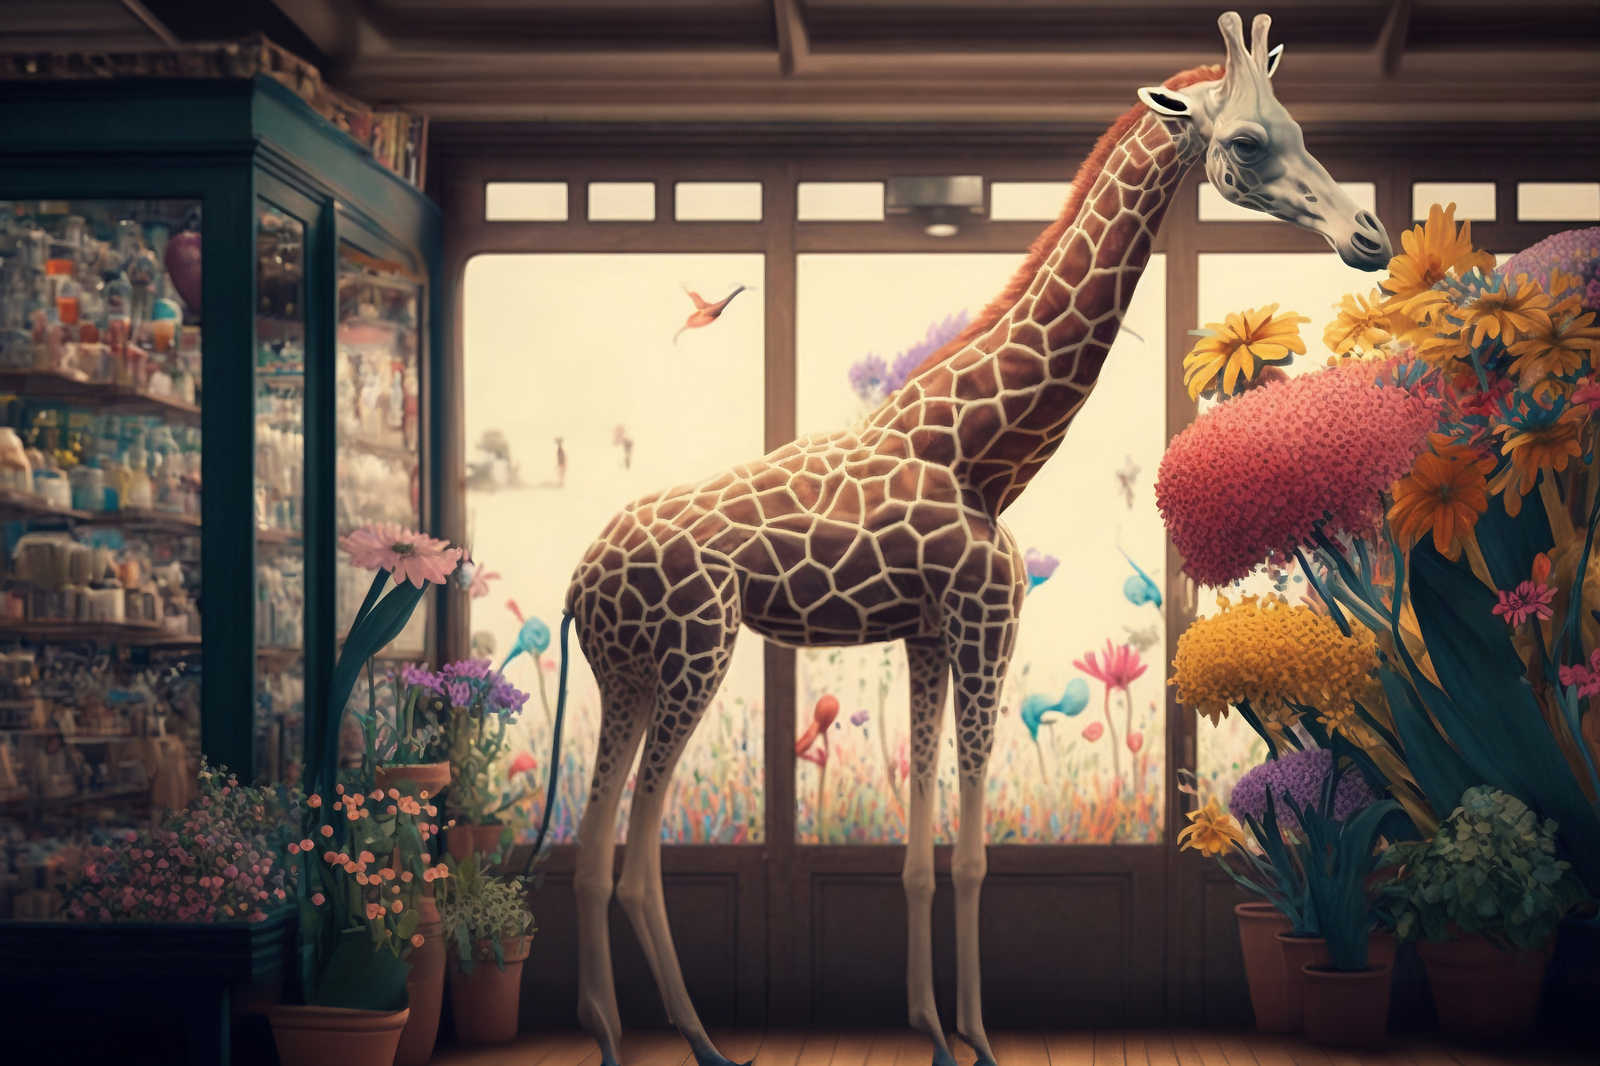             Toile KI »flower giraffe« - 120 cm x 80 cm
        